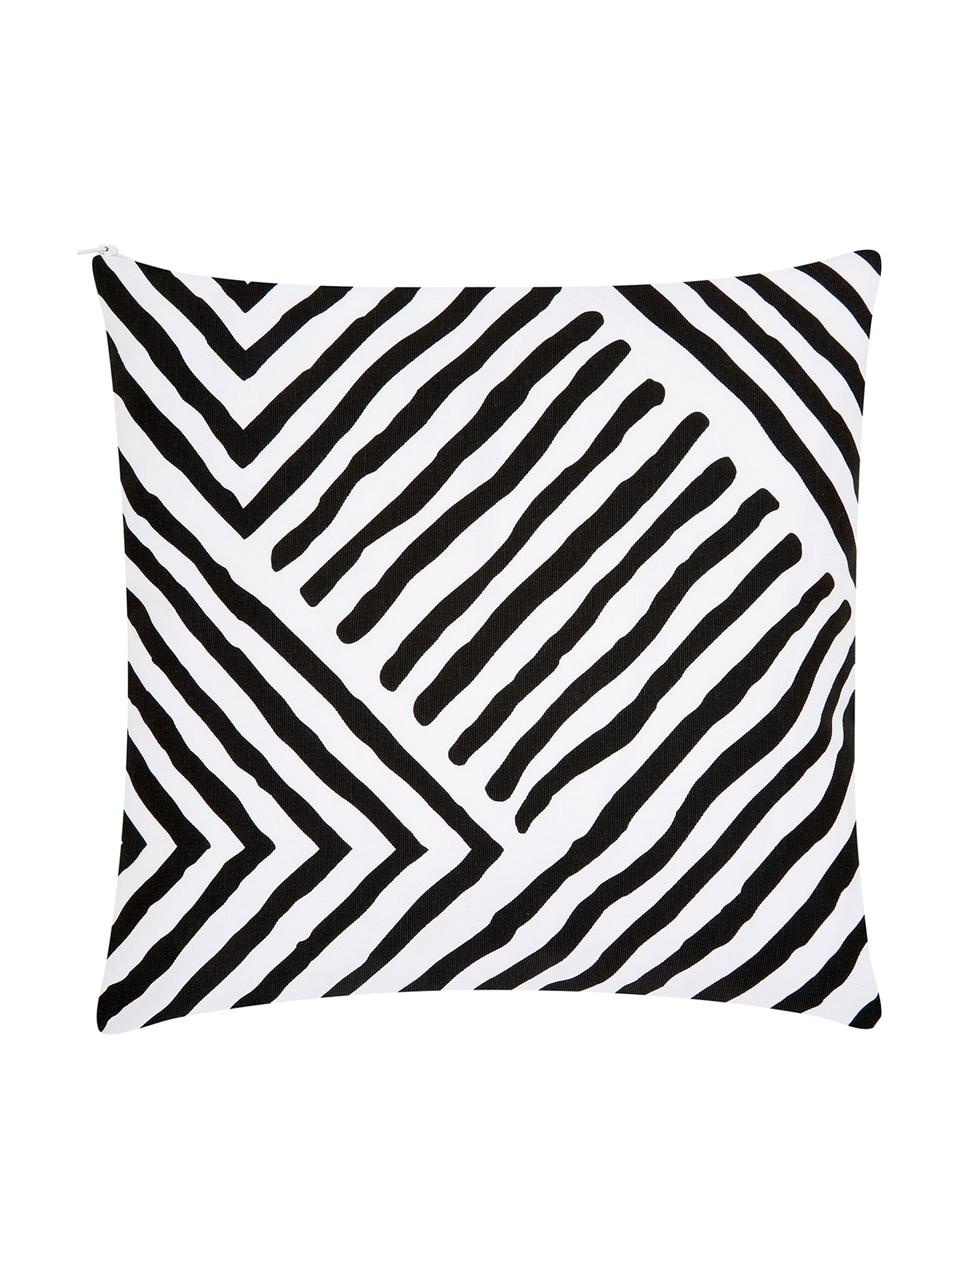 Kussenhoes met patroon Mia in zwart/wit, 100% katoen, Zwart, wit, 40 x 40 cm